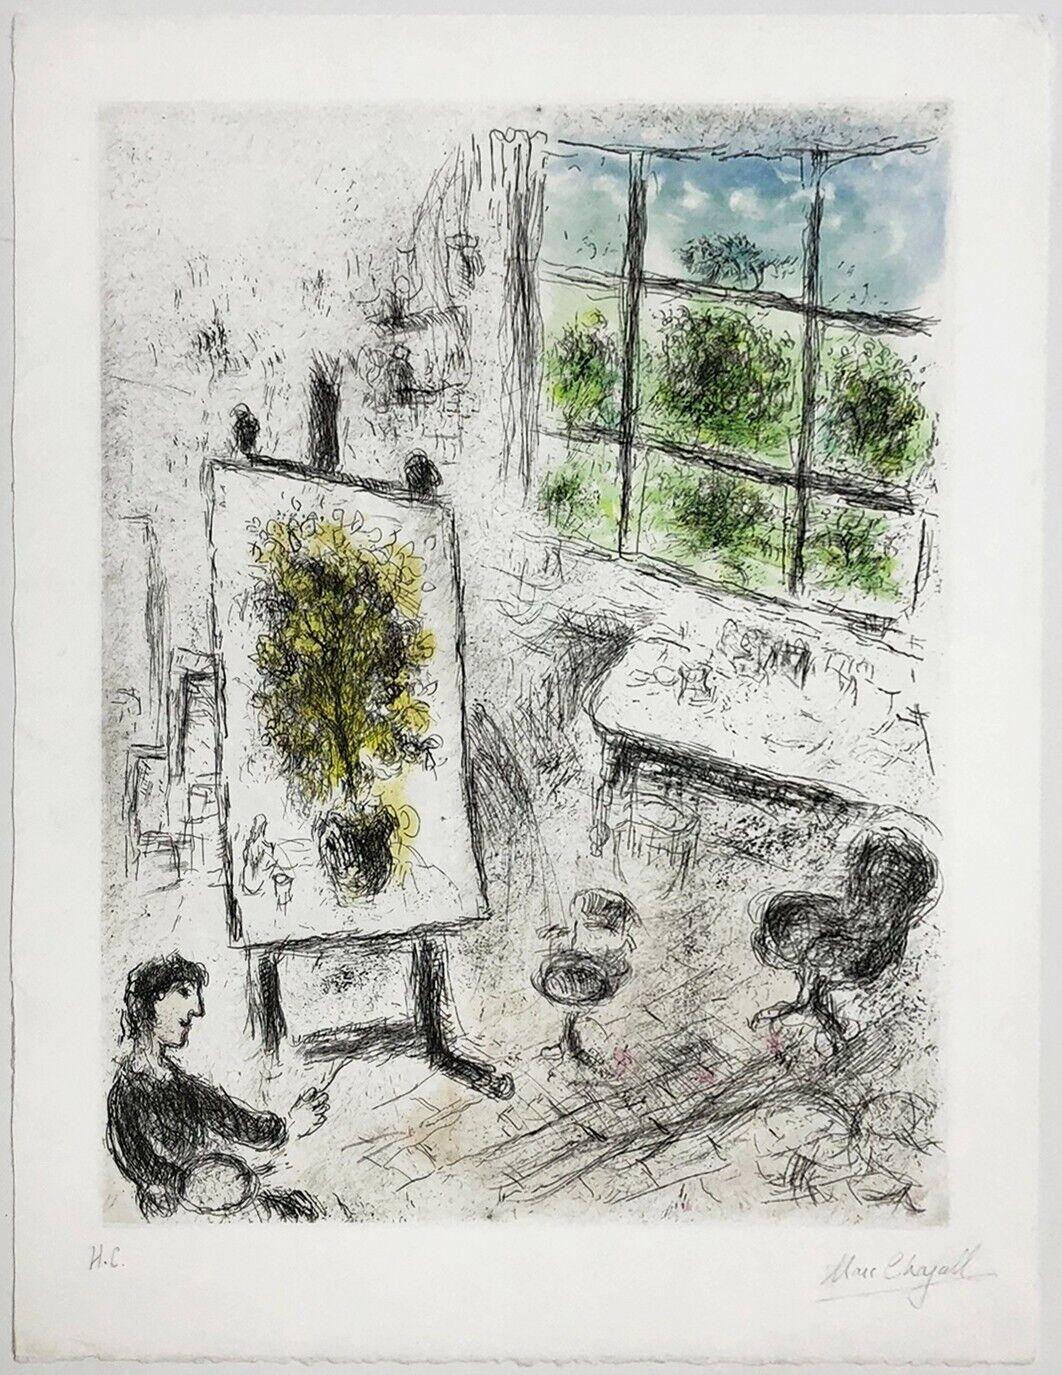 UNTITLED FROM CELUI QUI DIT LES CHOSES SANS RIEN DIRE - Print by Marc Chagall